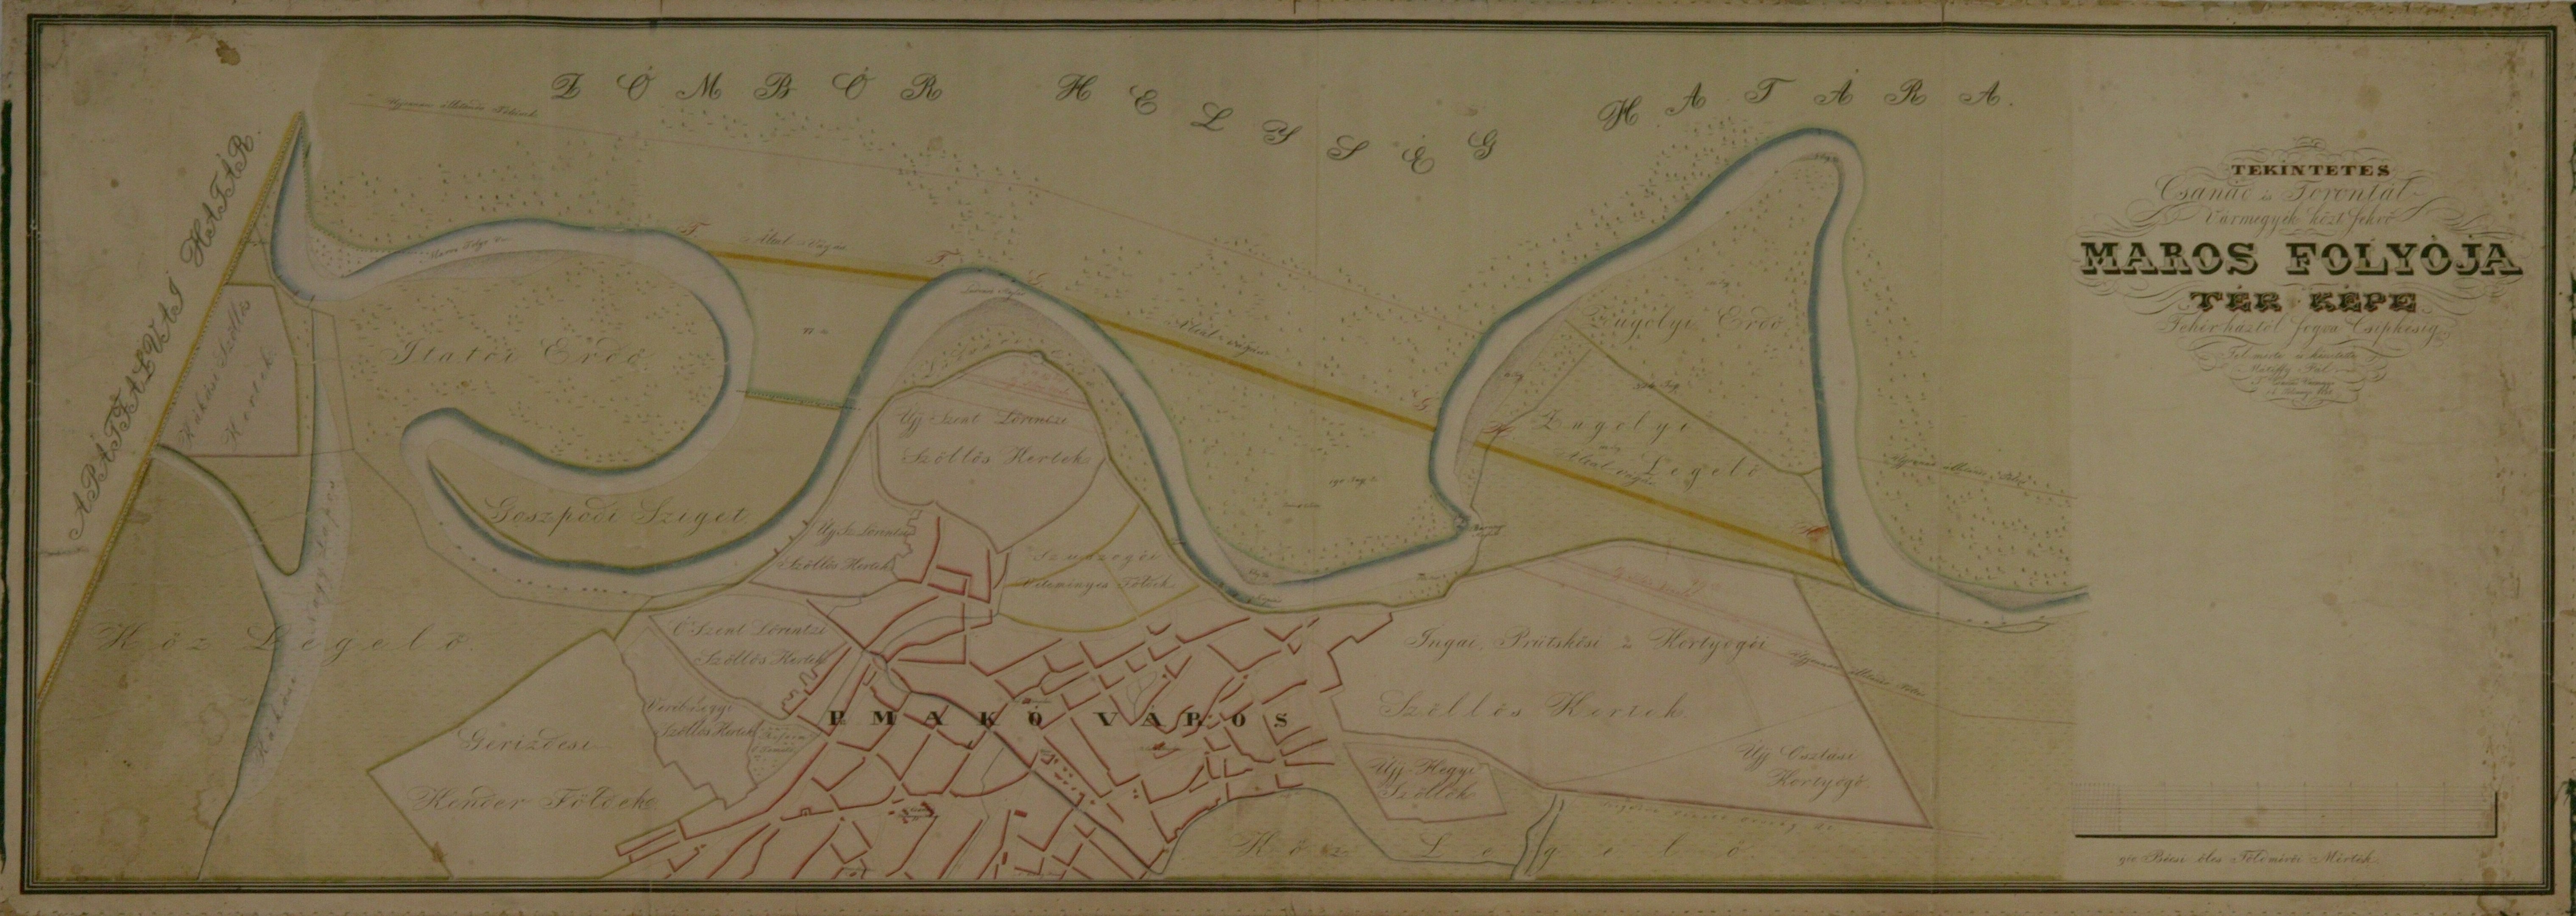 A Maros folyó térképe (Magyar Környezetvédelmi és Vízügyi Múzeum - Duna Múzeum CC BY-NC-SA)